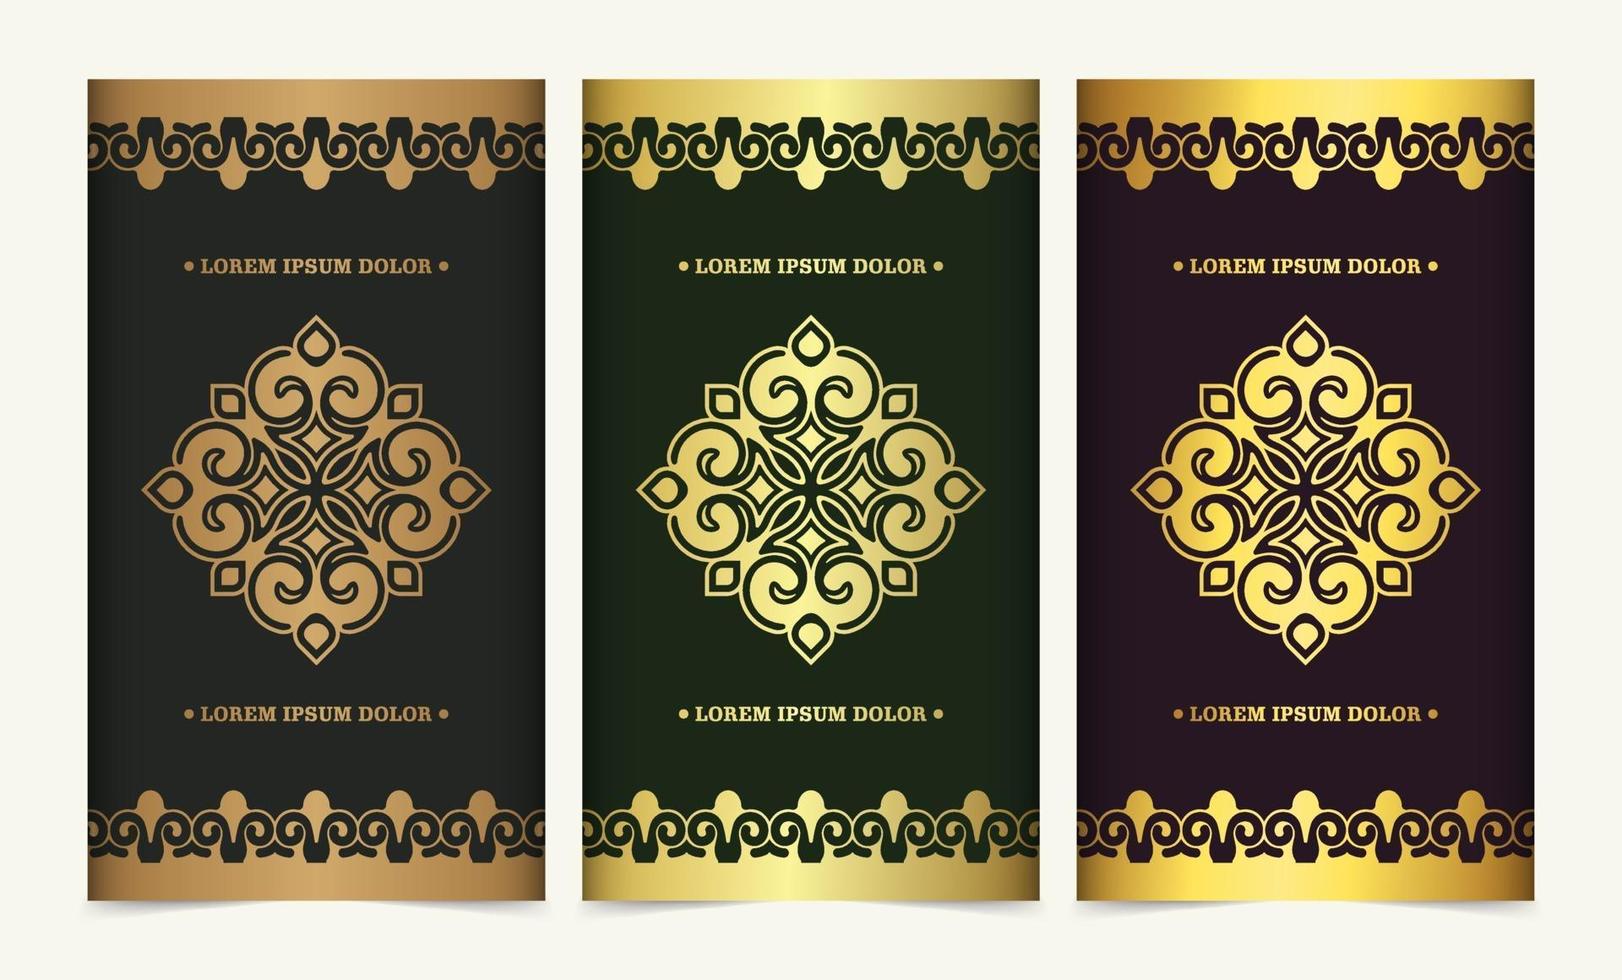 Luxus Mandala dekorative Karte in Goldfarbe vektor